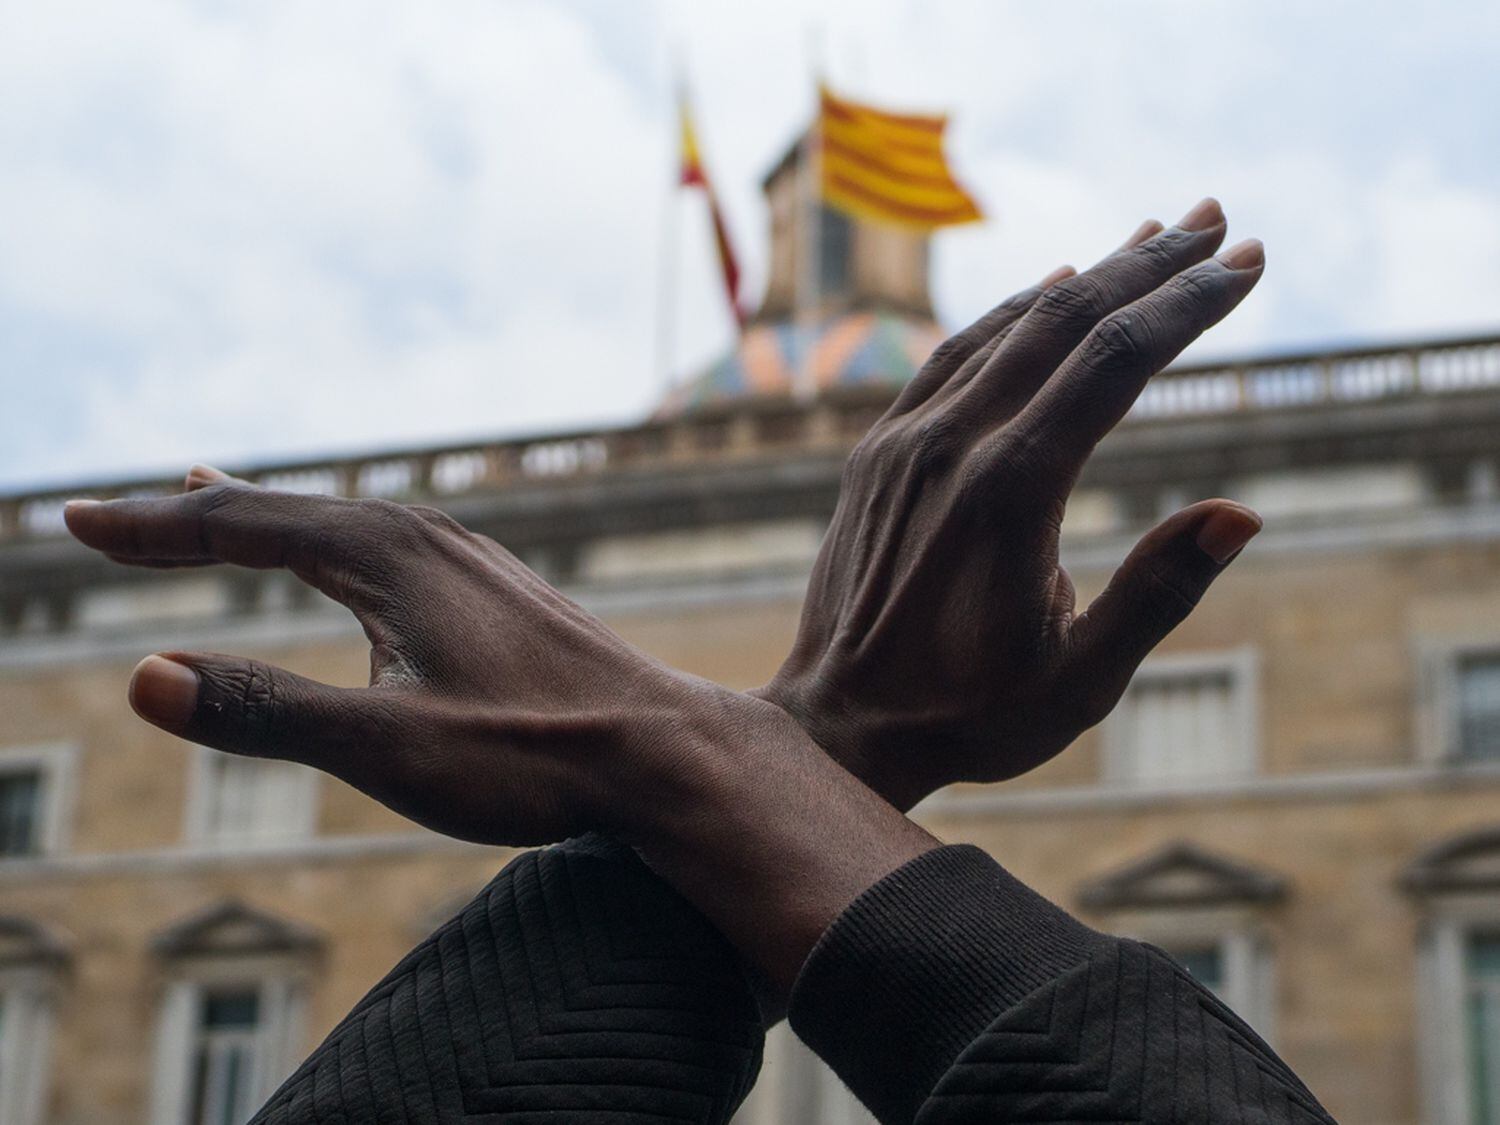 Un hombre cruza los brazos durante una concentración en Plaza de Sant Jaume de Barcelona contra el racismo 'Las vidas negras importan' organizada por  la Comunidad Negra Africana y Afrodescendiente de España (CNAAE) el 7 de junio de 2020.Matias Chiofalo07/06/2020